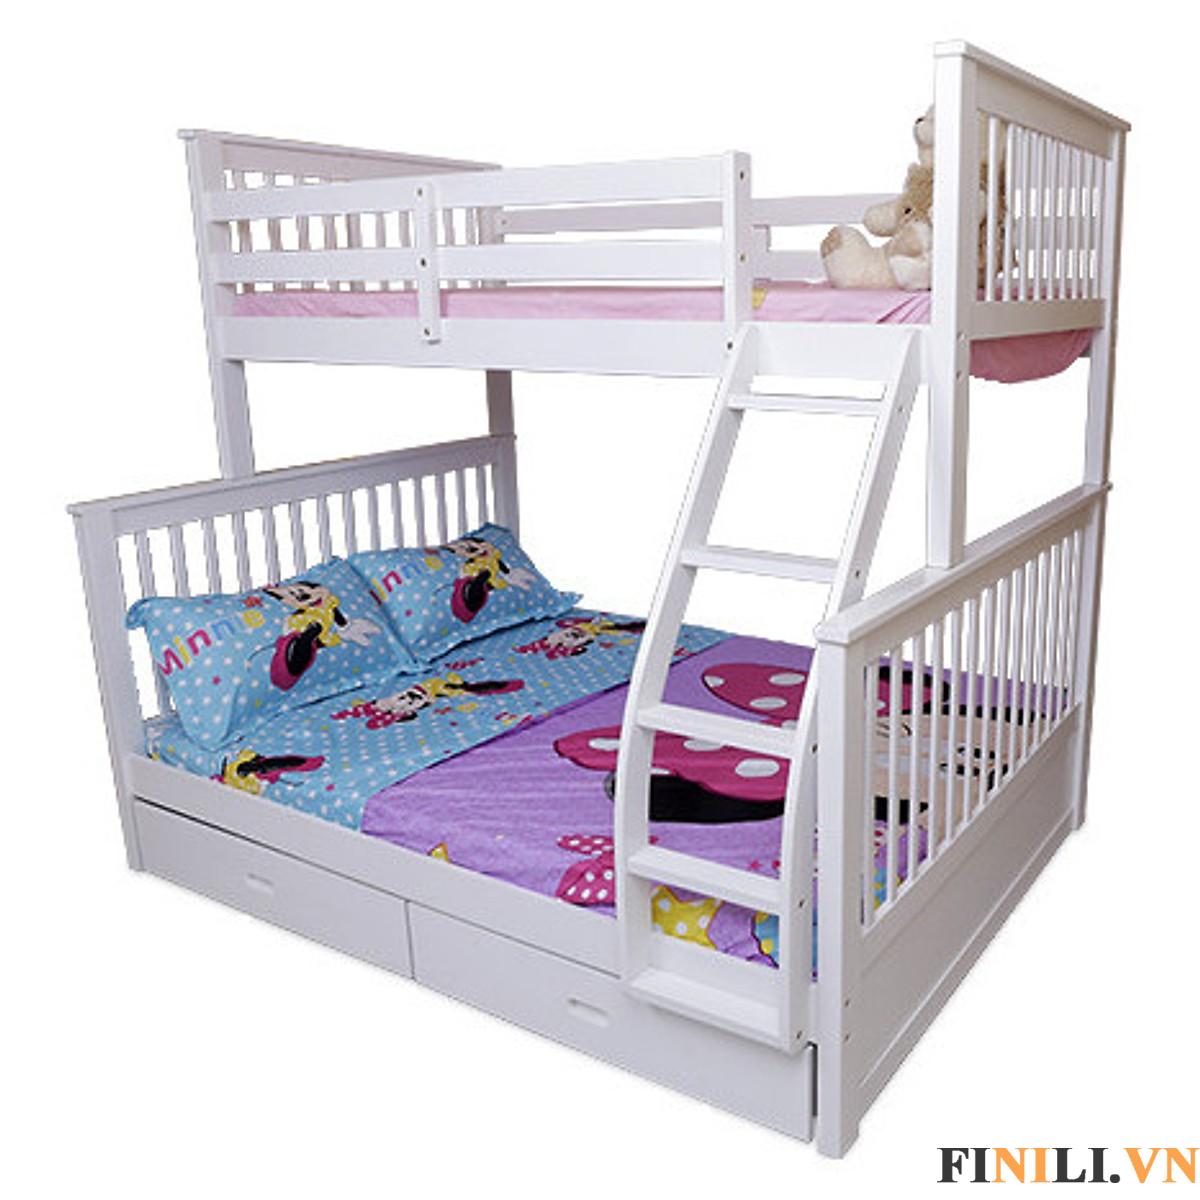 Giường tầng cho bé màu trắng 2 tầng FNL 02101 sẽ là sản phẩm giúp tiết kiệm tối đa diện tích